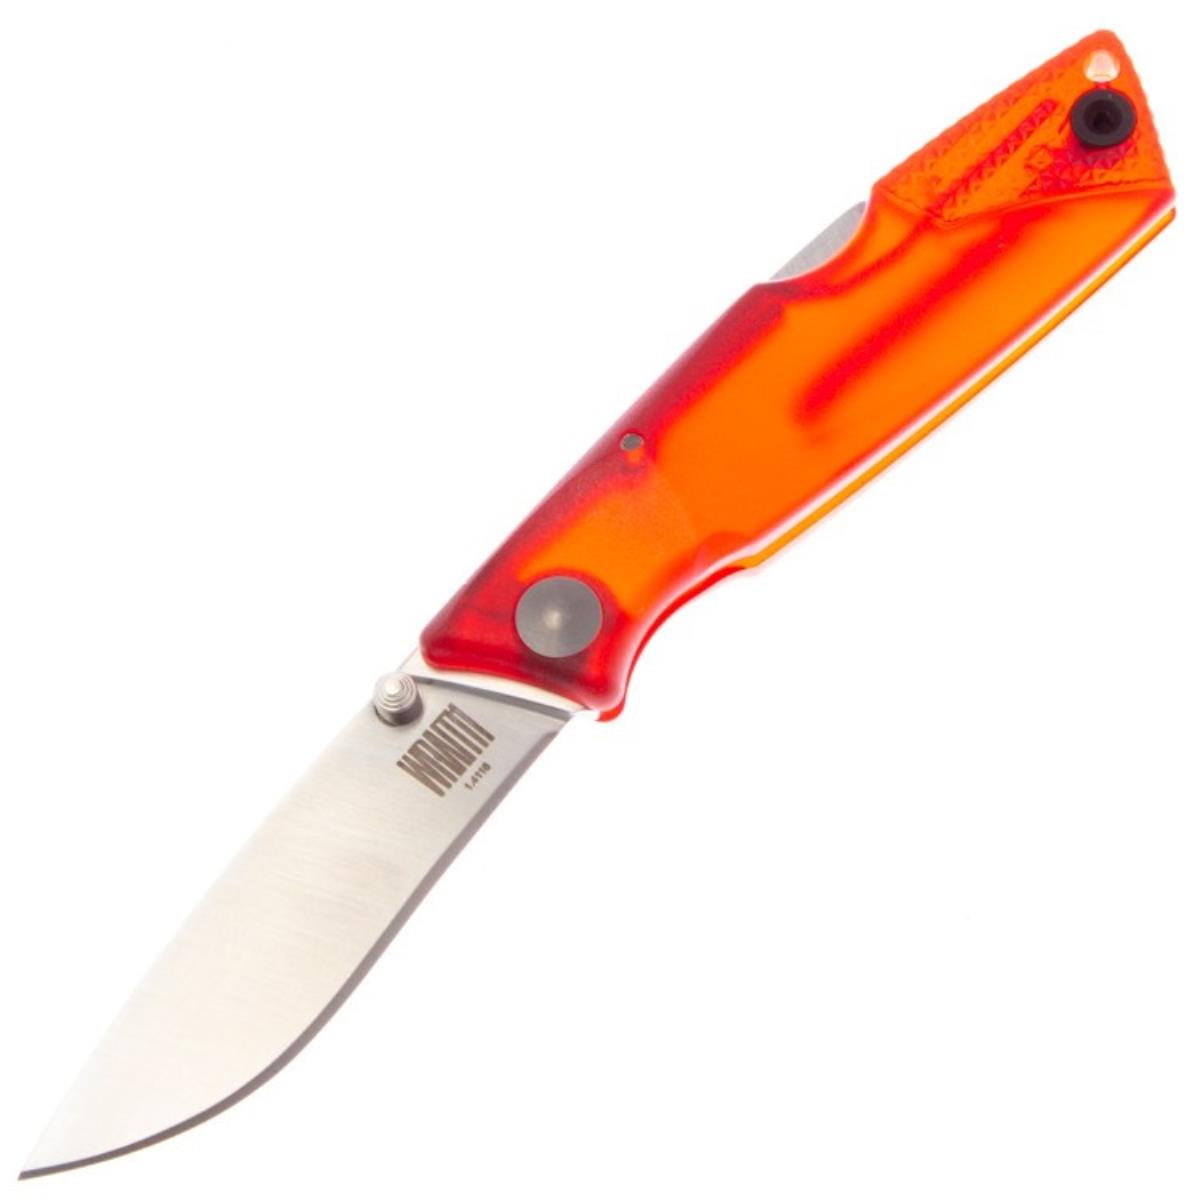 Нож Wraith Ice Series Fire складн.,красная полимерная рукоять, клинок AUS8 (8798RED)  ONTARIO нож складной полусеррейторный ontario rat 1 сталь aus 8 клинок satin рукоять   grn